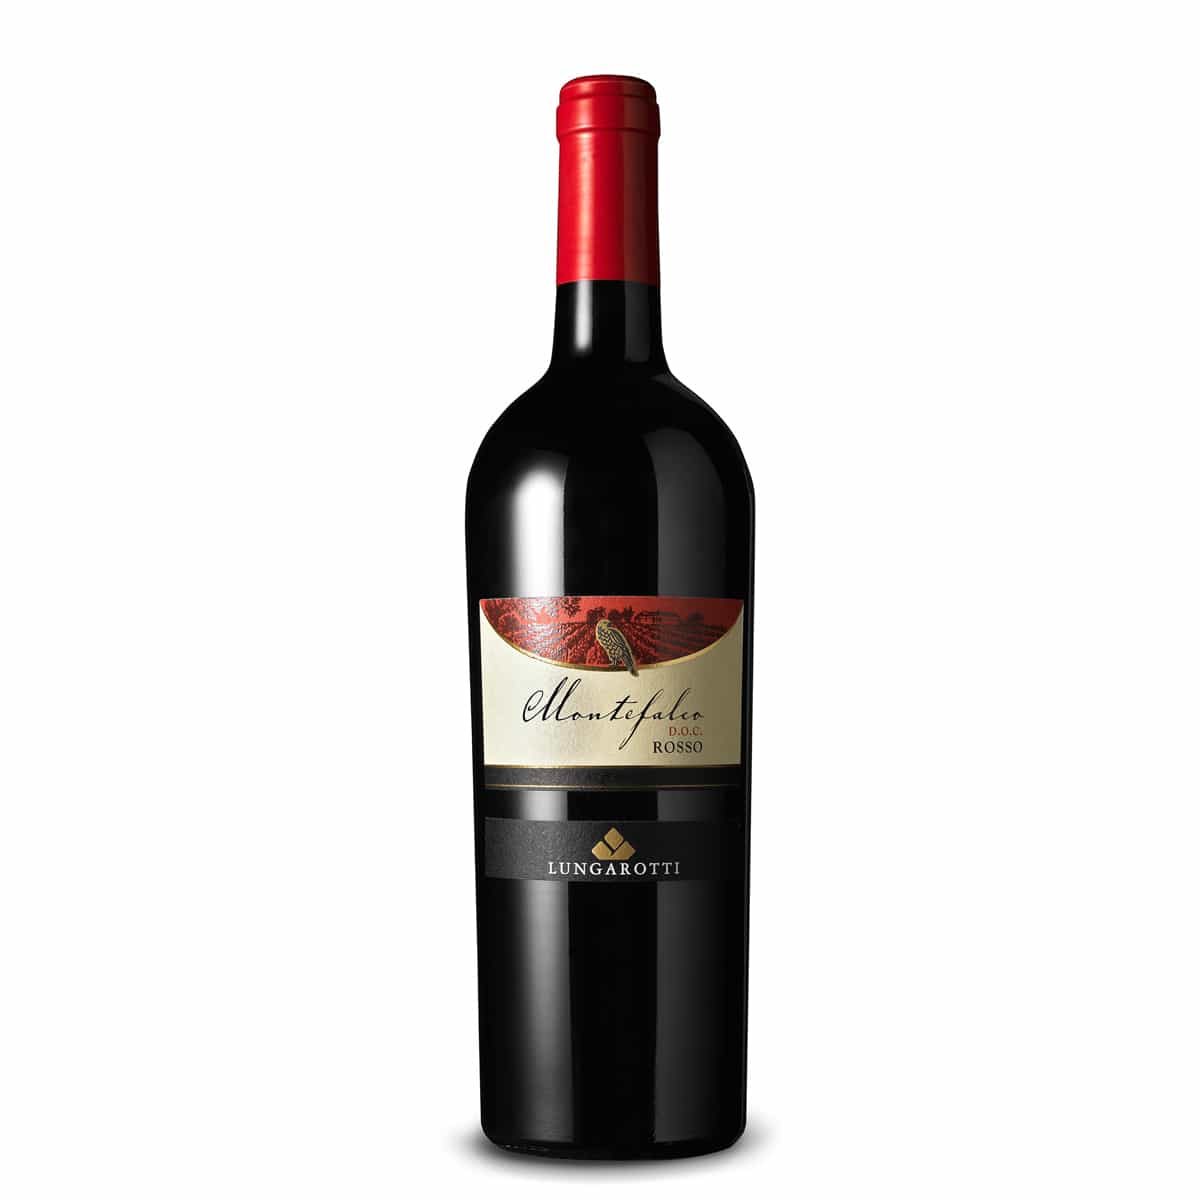 Montefalco Rosso, Vini di Torgiano (Umbria) - Privilege Wine